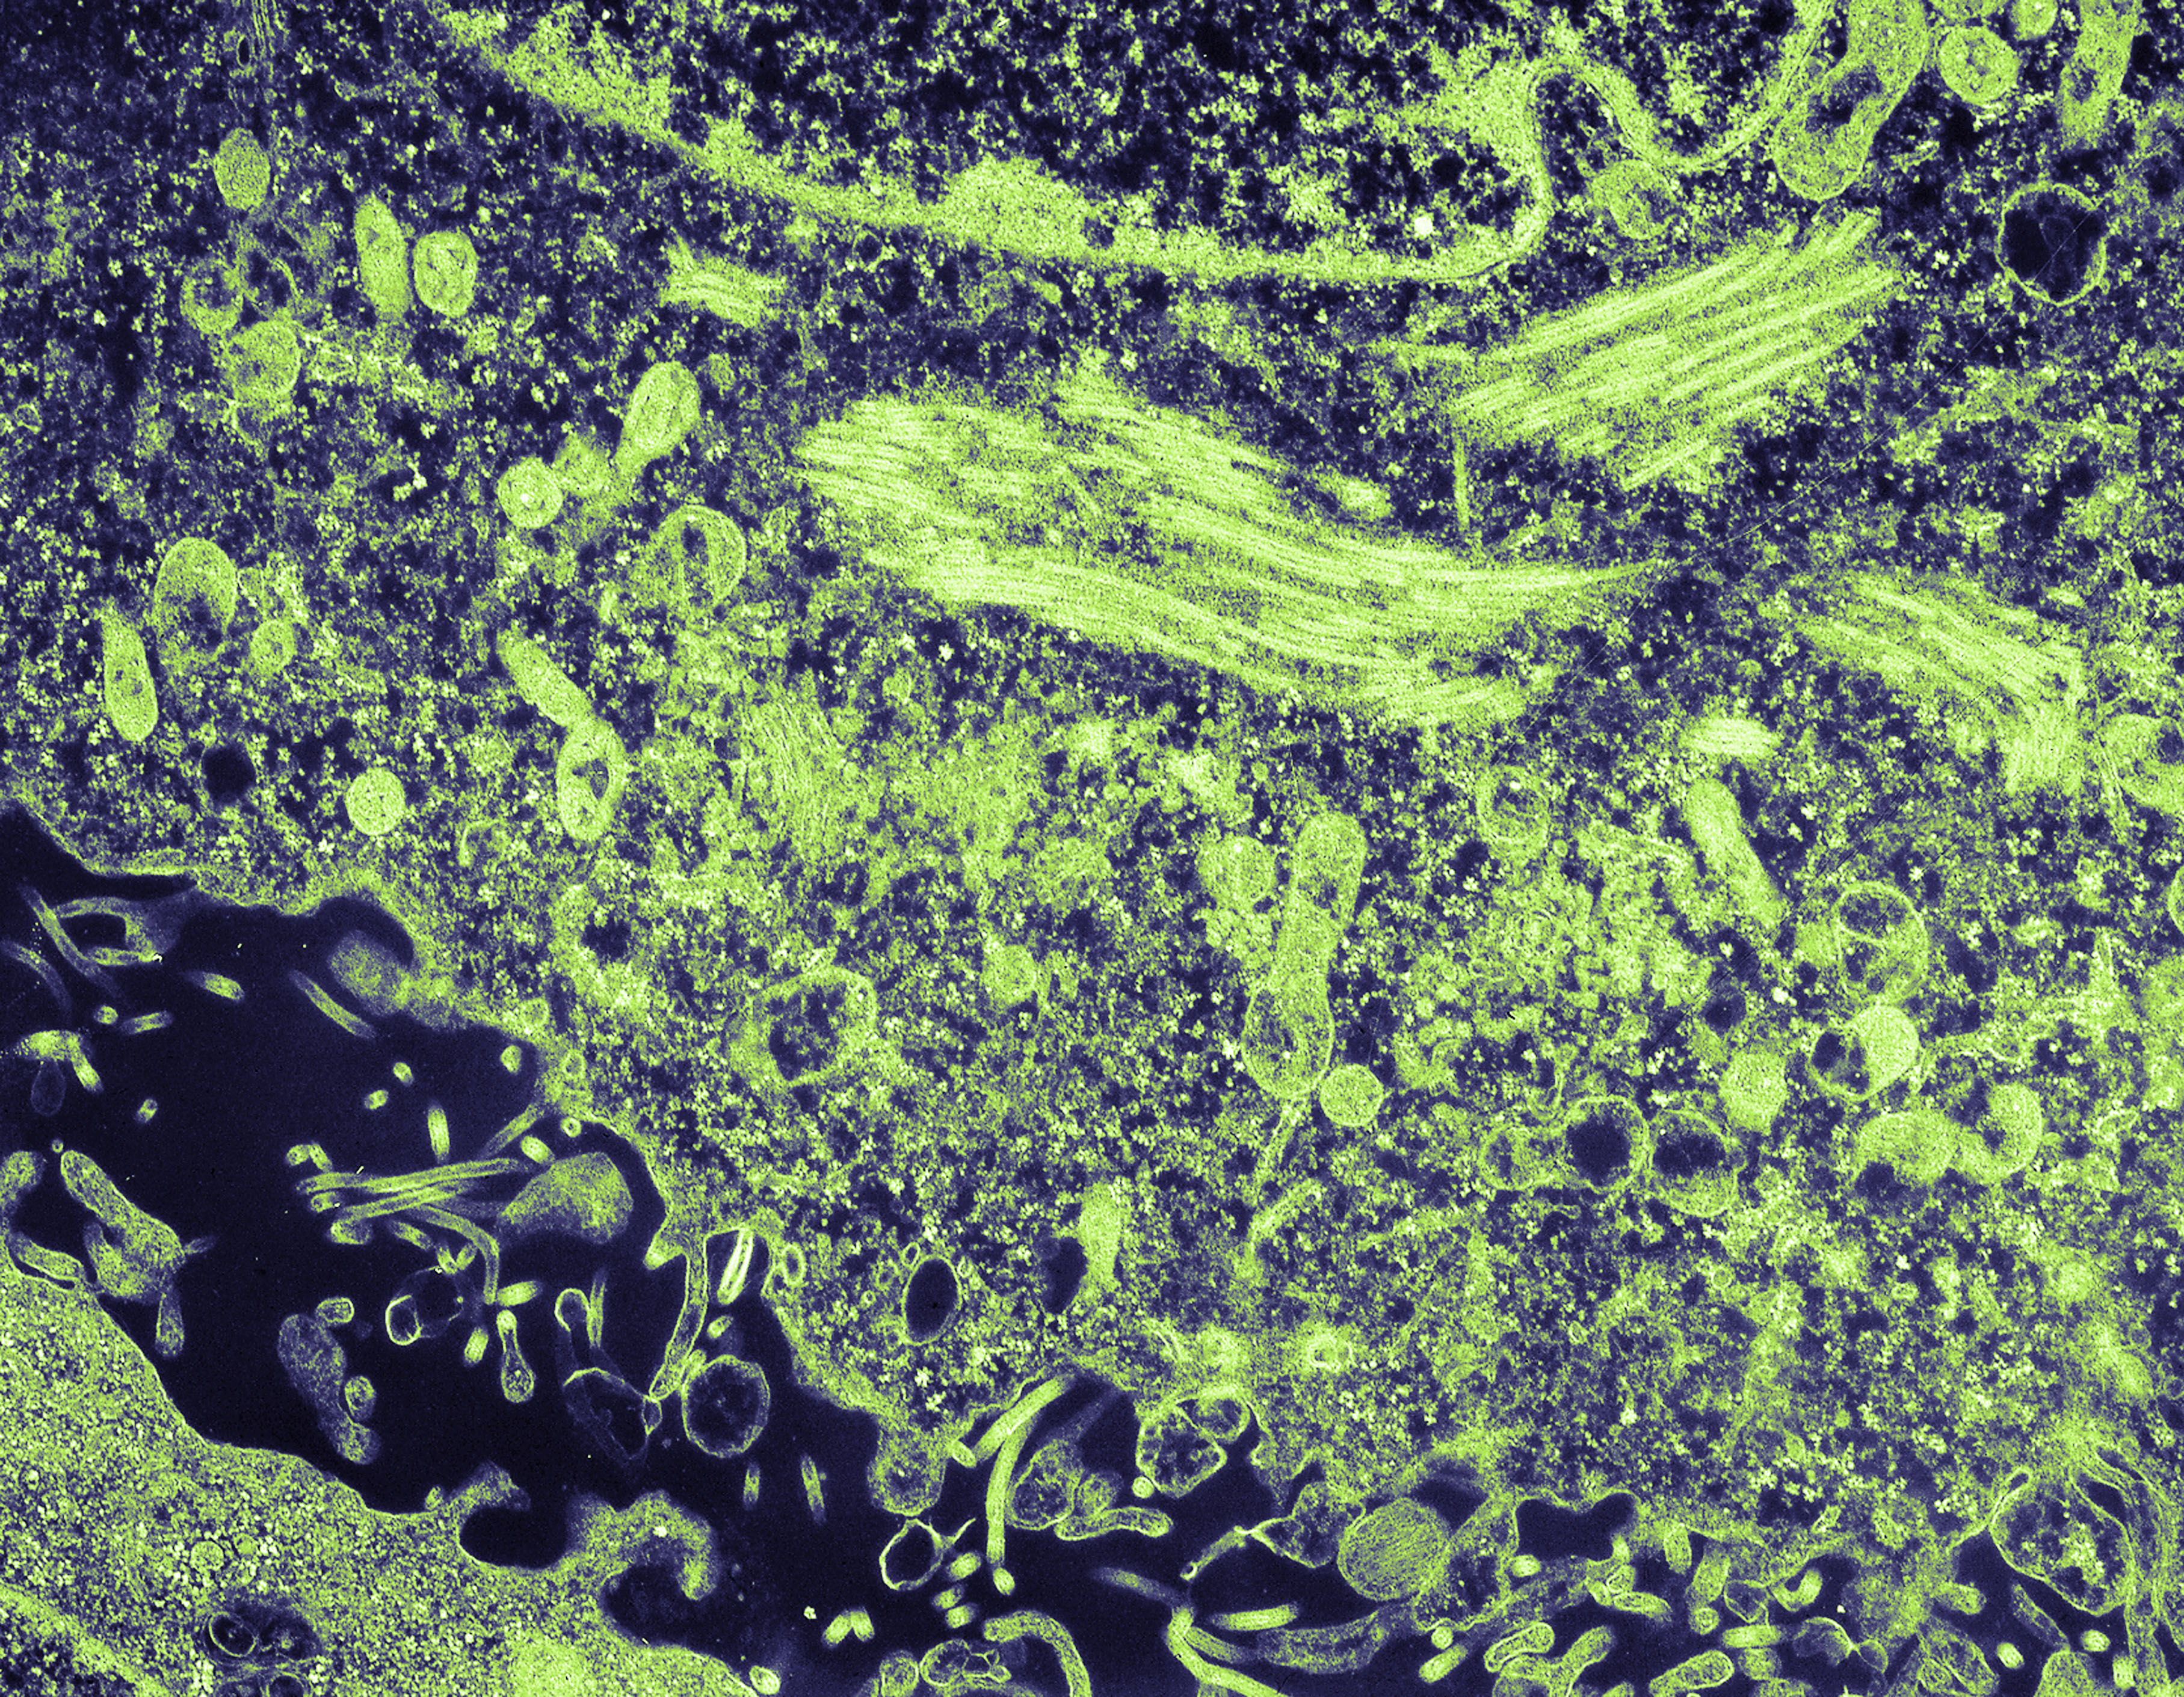 Ebola electron micrograph 1976